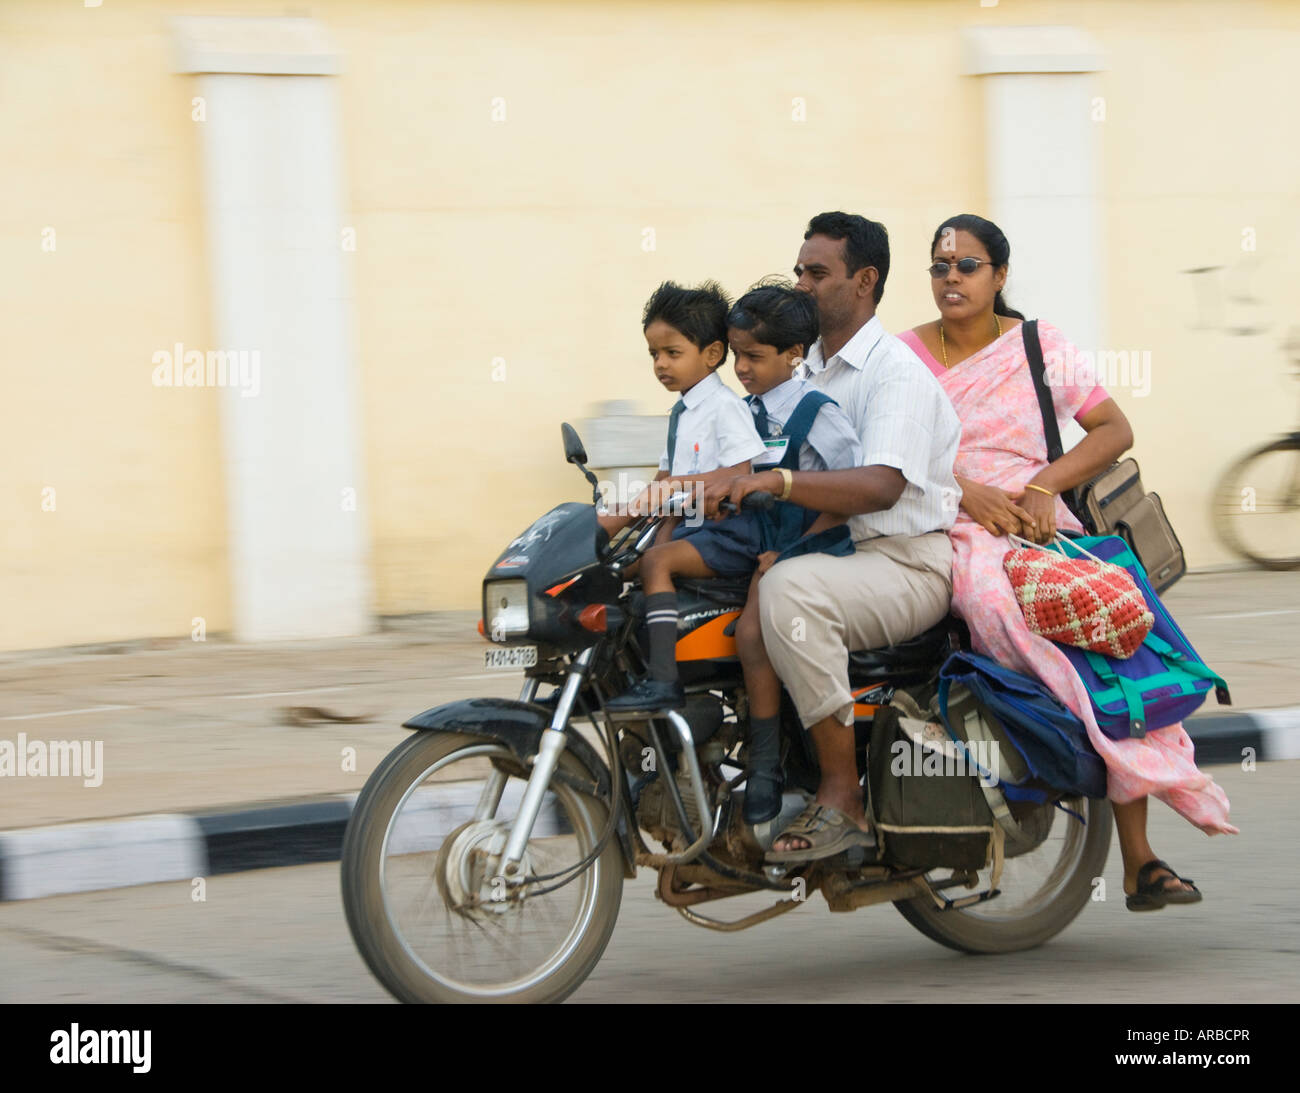 Une famille indienne sur une moto en Inde. Ratan Tata a dit avoir vu ensemble familles sur un vélo a été son inspiration pour le Nano Banque D'Images